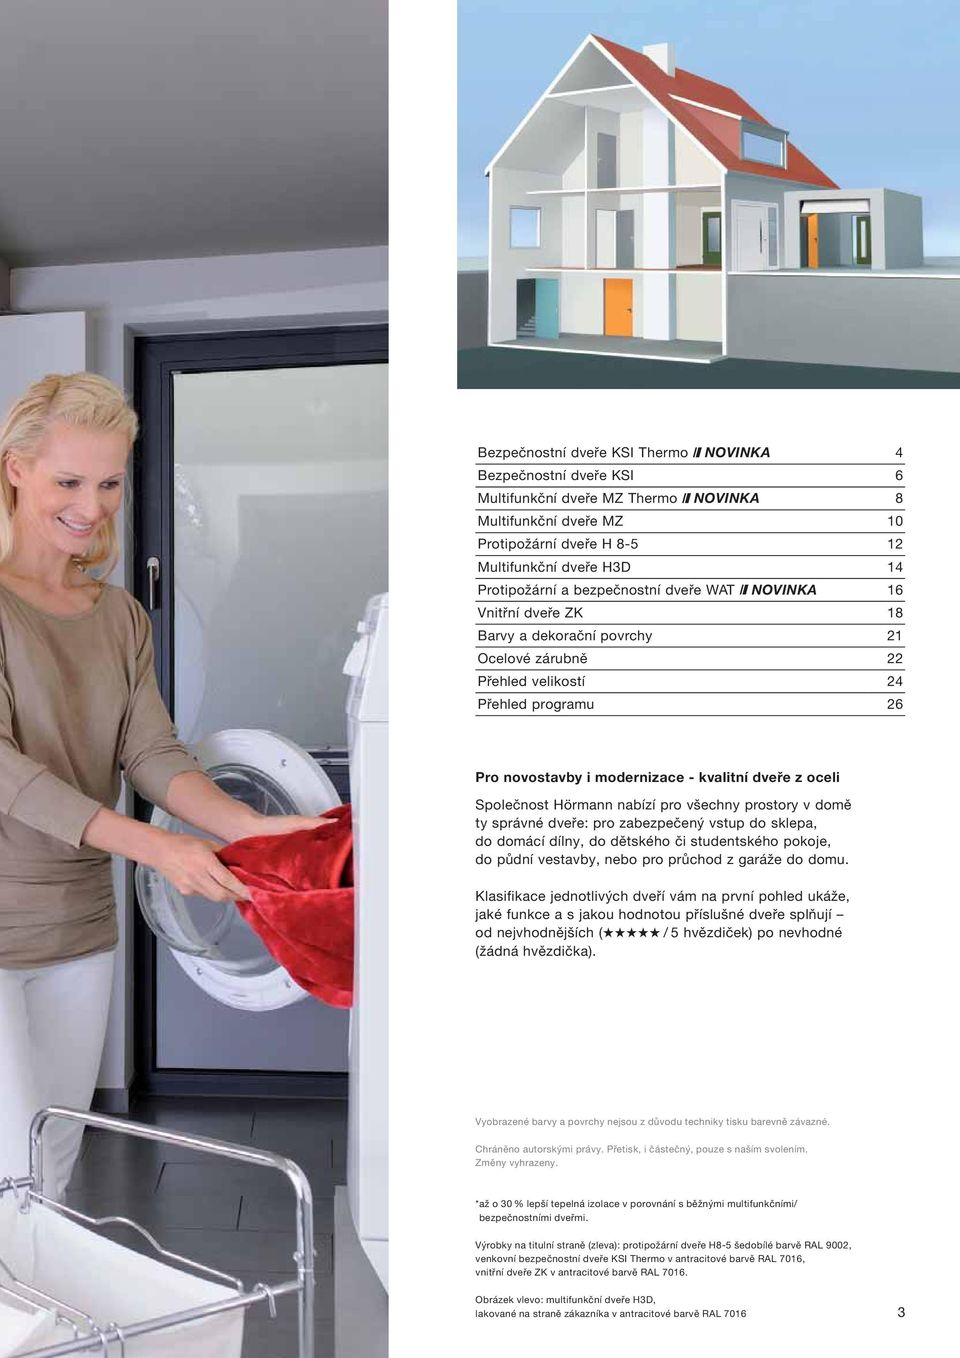 Společnost Hörmann nabízí pro všechny prostory v domě ty správné dveře: pro zabezpečený vstup do sklepa, do domácí dílny, do dětského či studentského pokoje, do půdní vestavby, nebo pro průchod z